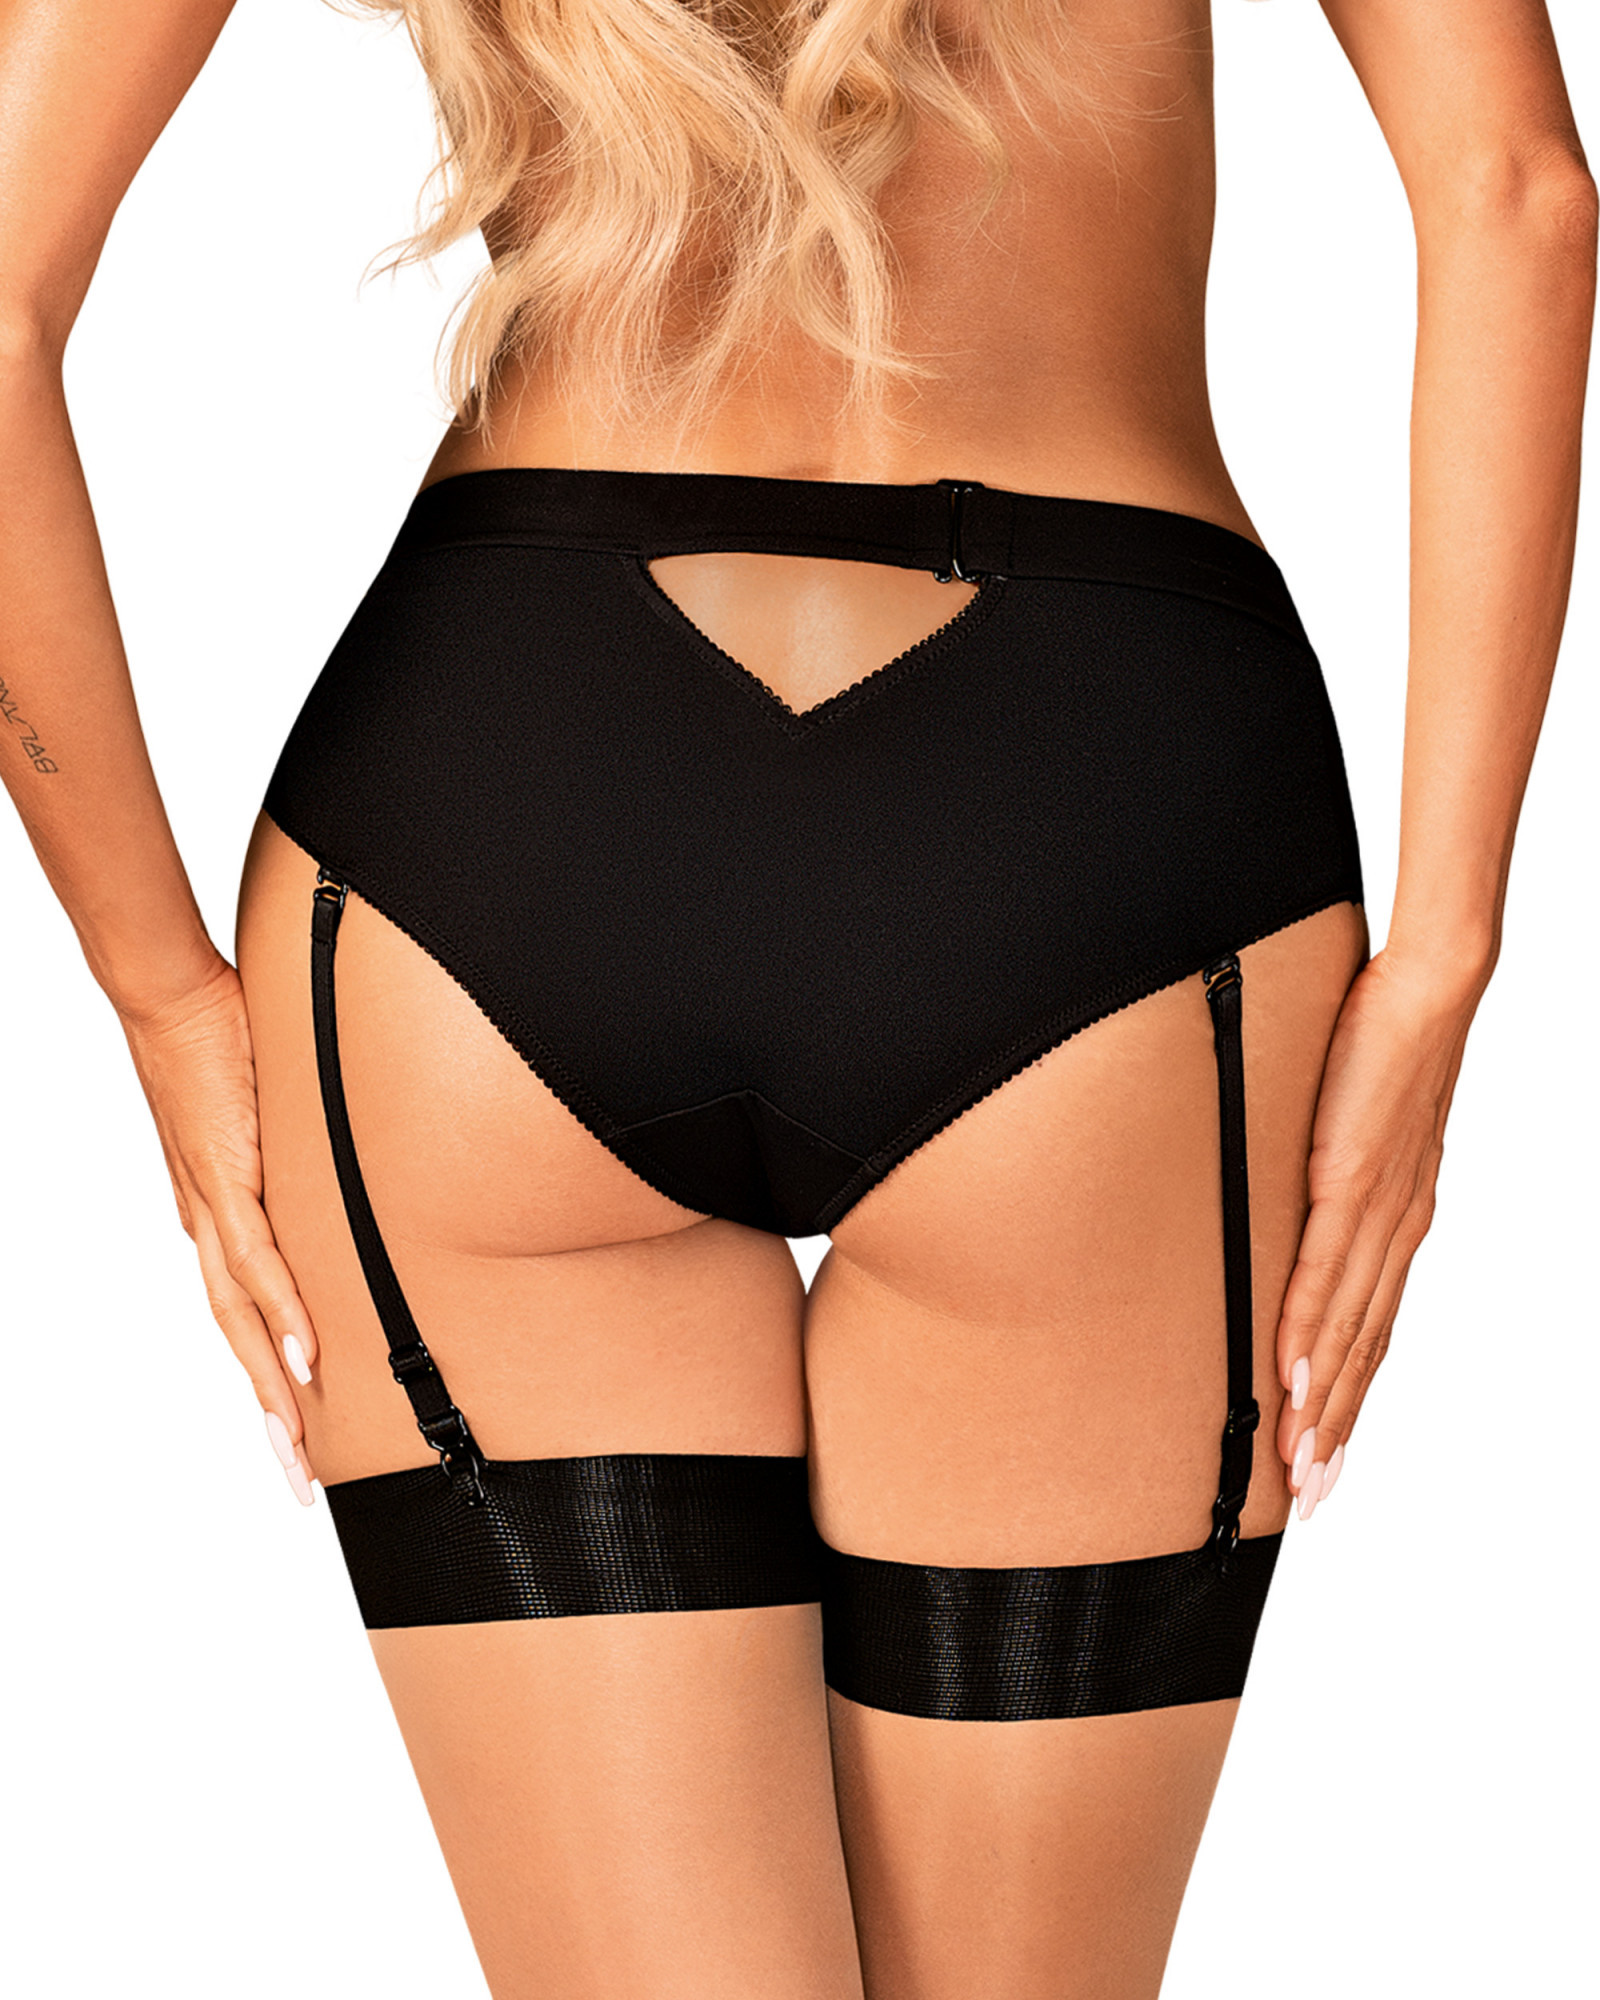 kalhotky garter panties černá XS/S model 17827544 - Obsessive